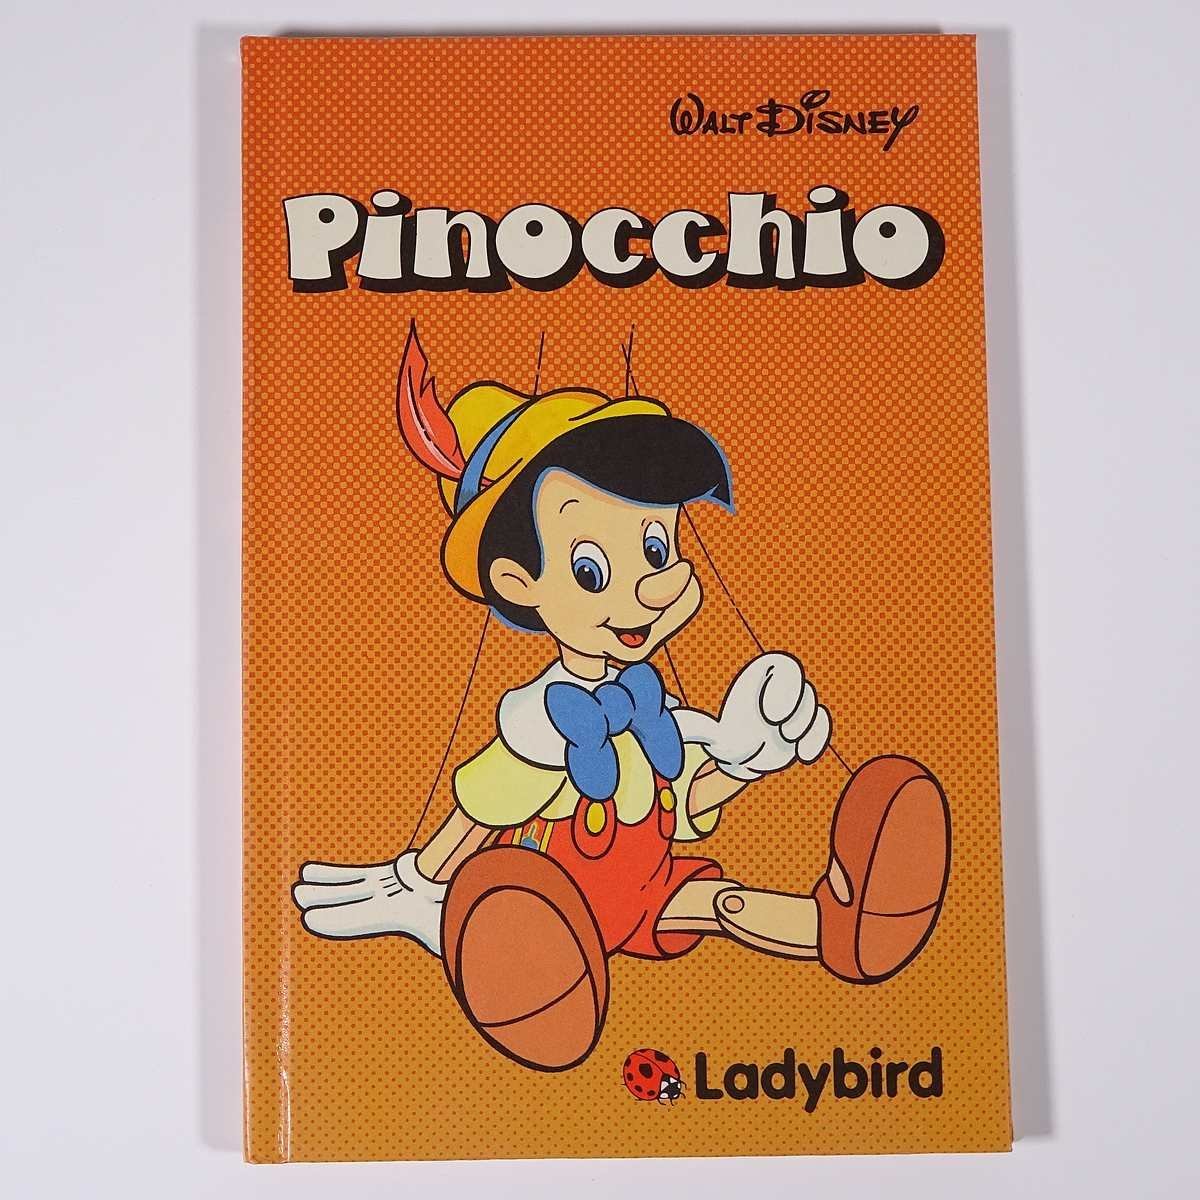 【英語洋書絵本】 Pinocchio ピノキオ Ladybird ウォルト・ディズニー 発行年不明 単行本 子供本 児童書_画像1